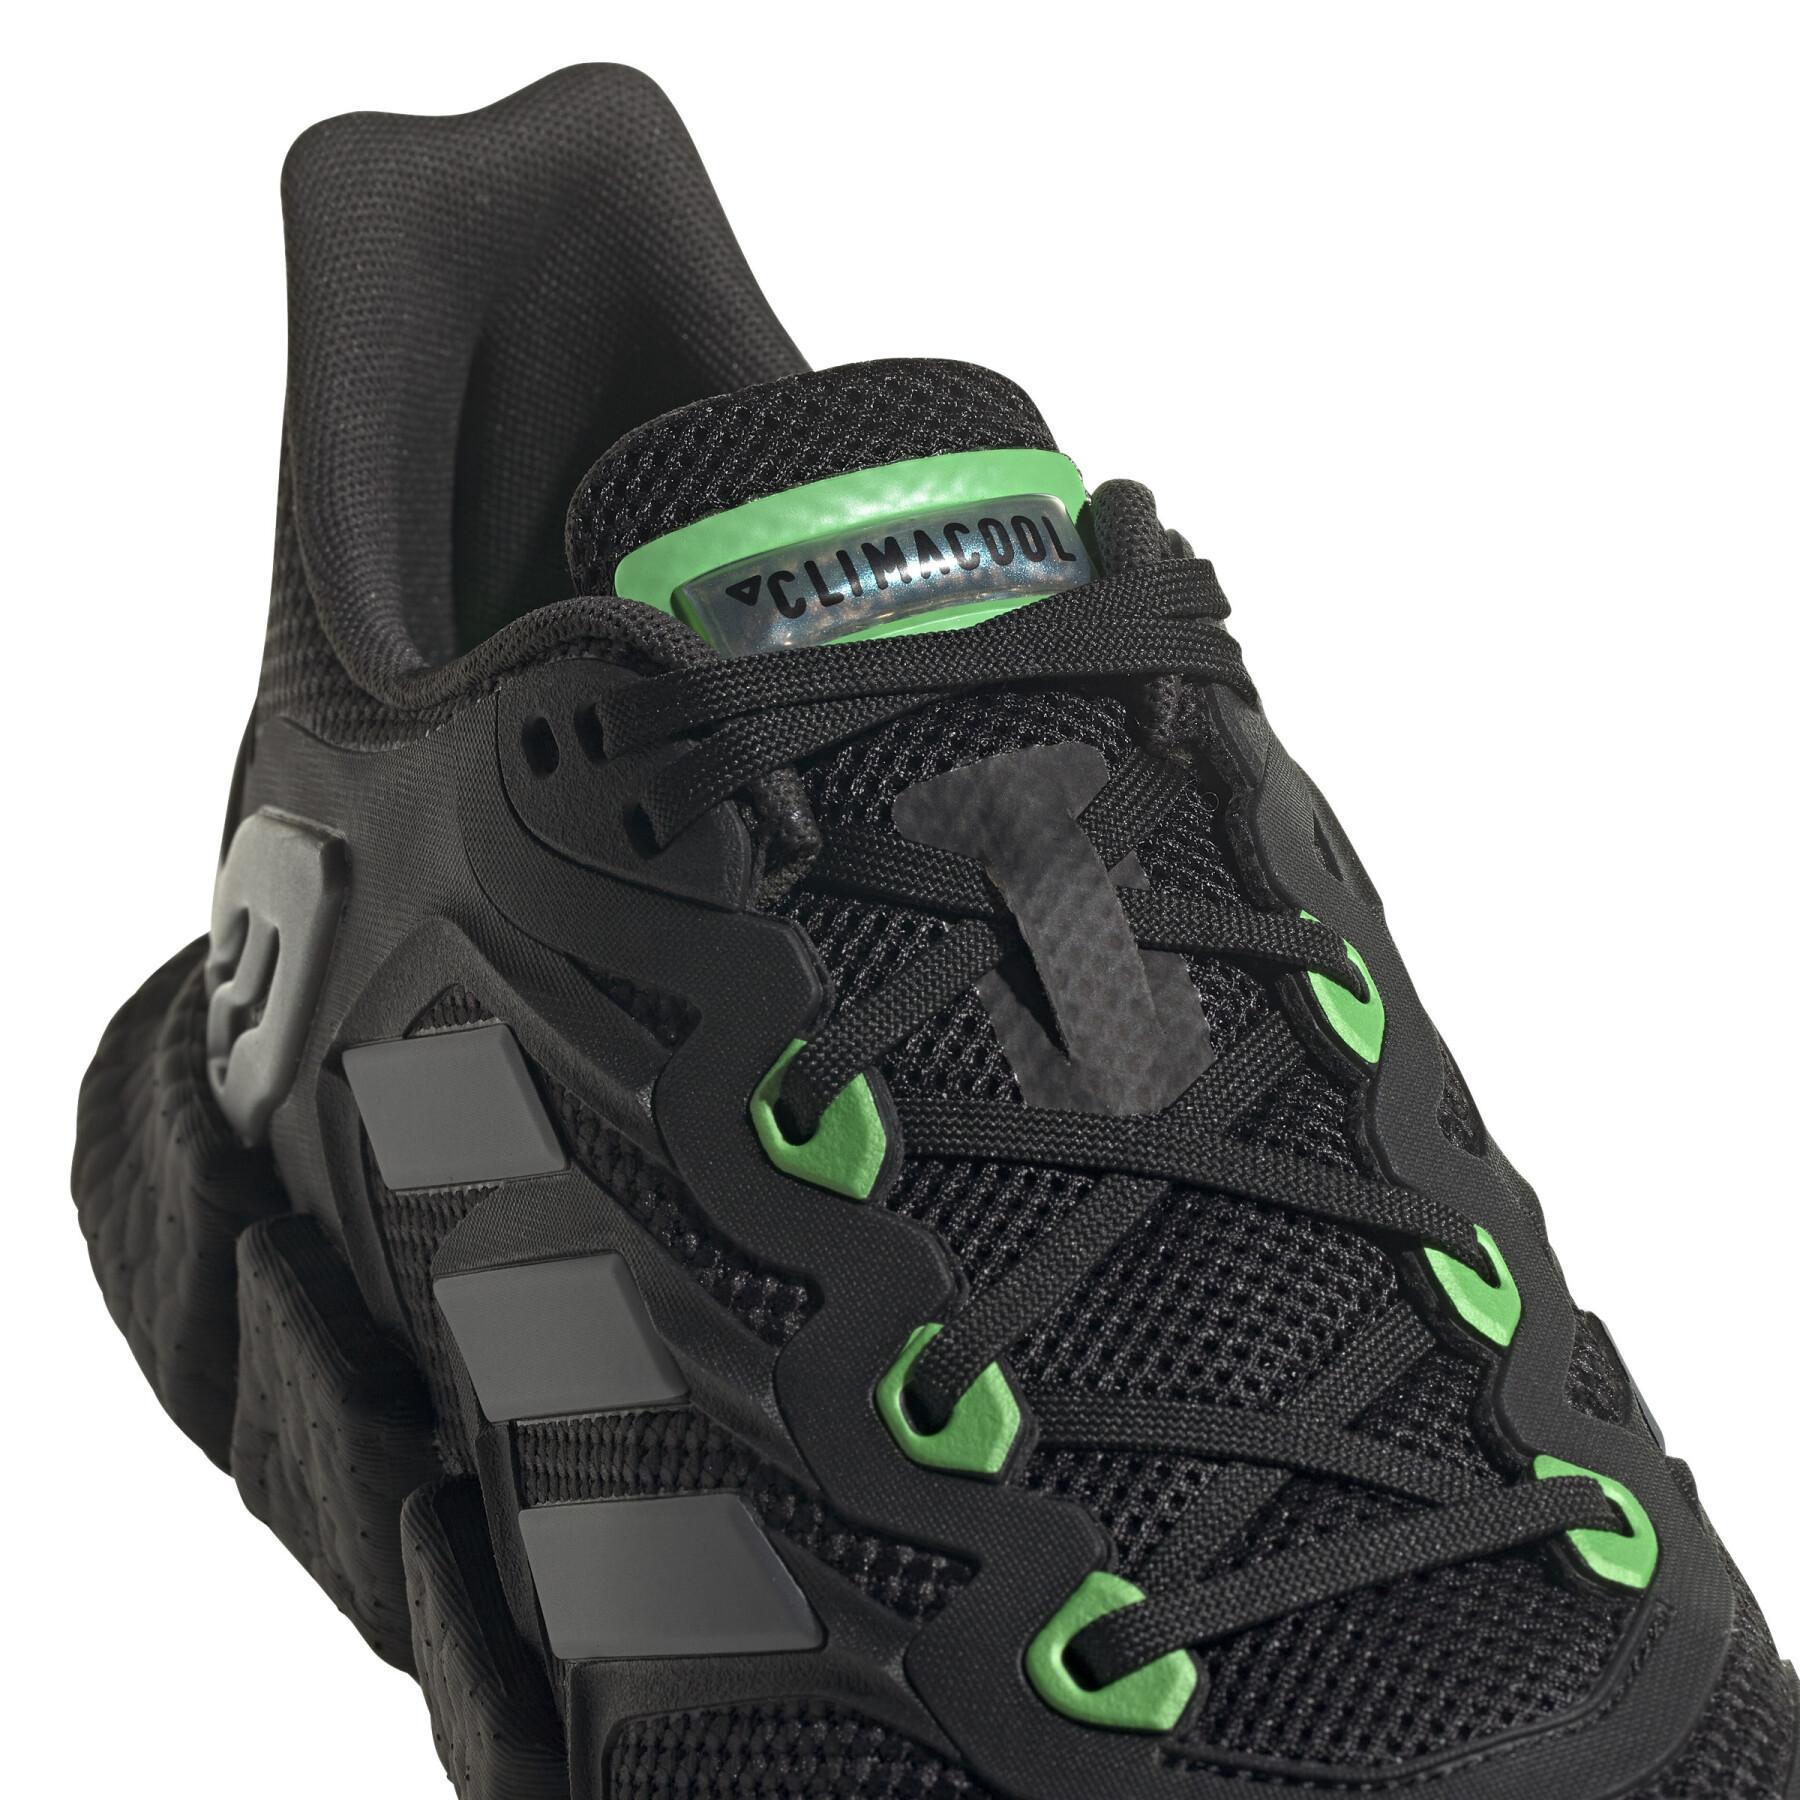 Zapatillas de running adidas Climacool Vento